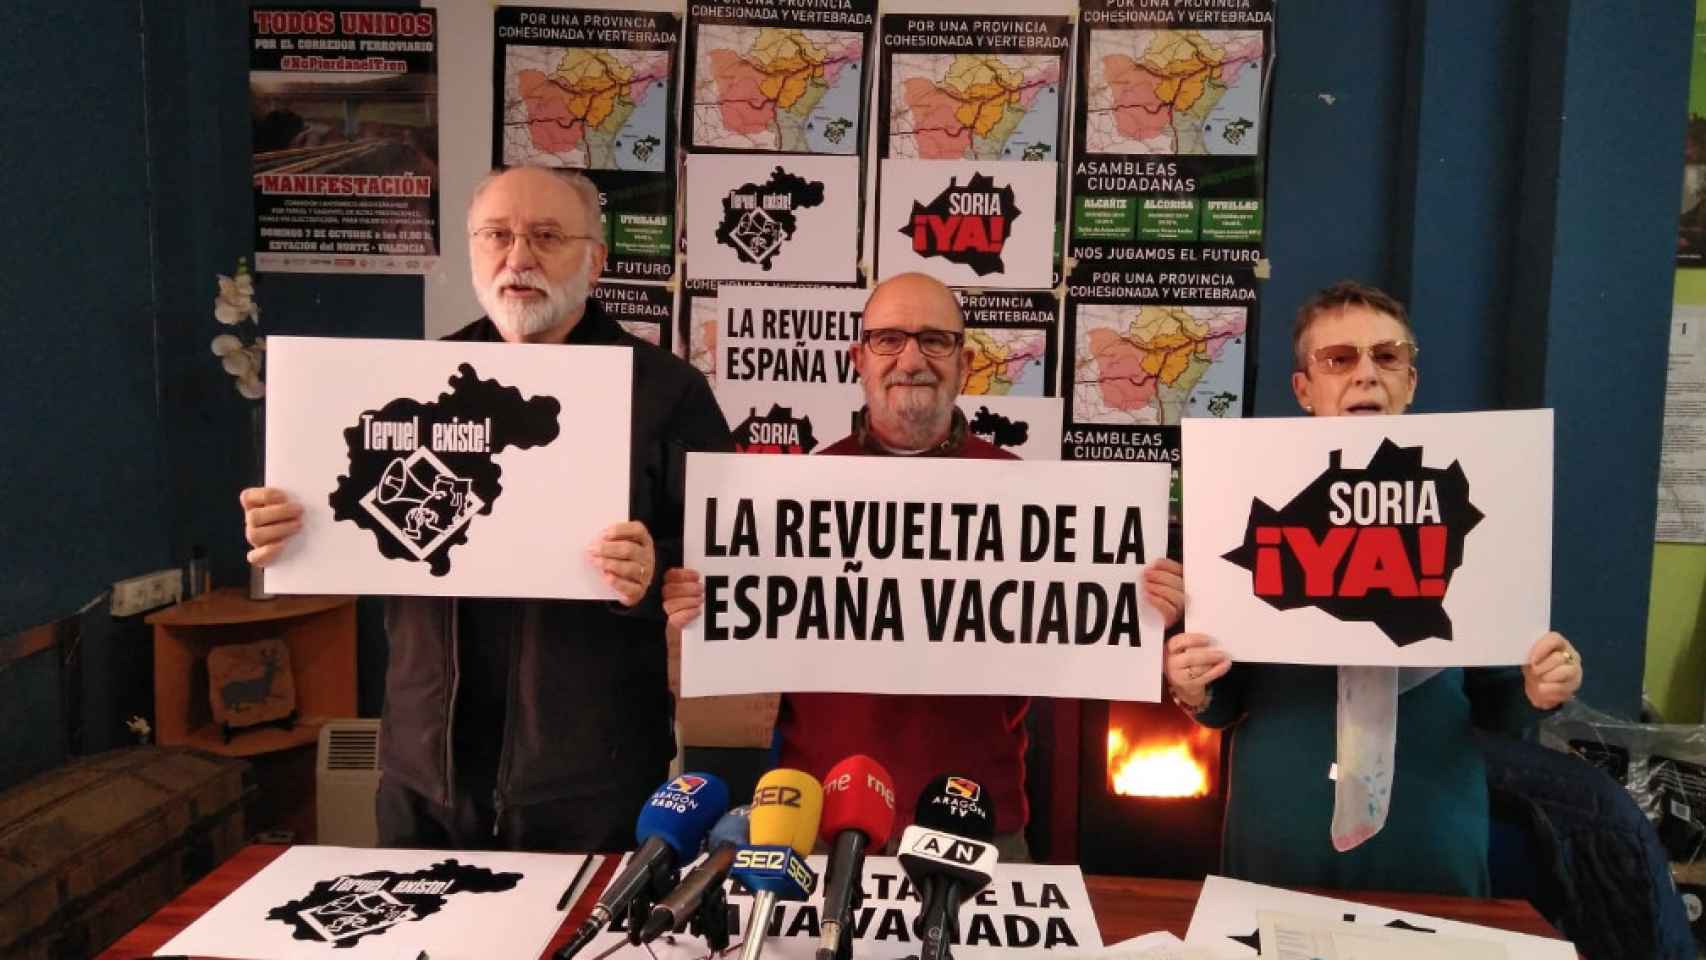 Miembros de las plataformas 'Soria ¡Ya!' y 'Teruel Existe' / TWITTER